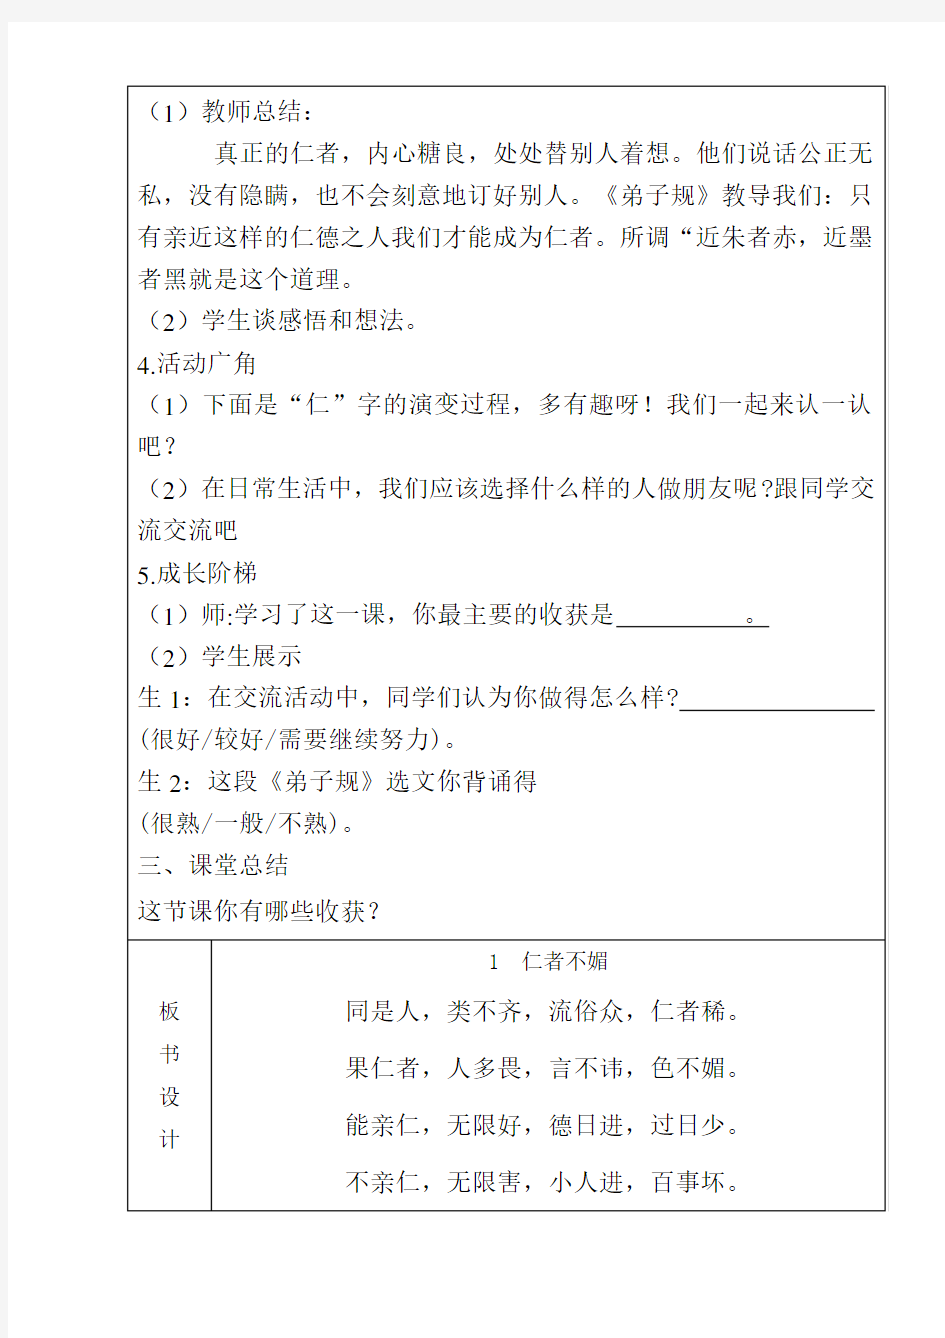 三年级上中华优秀传统文化教案(表格)2019山东大学出版社